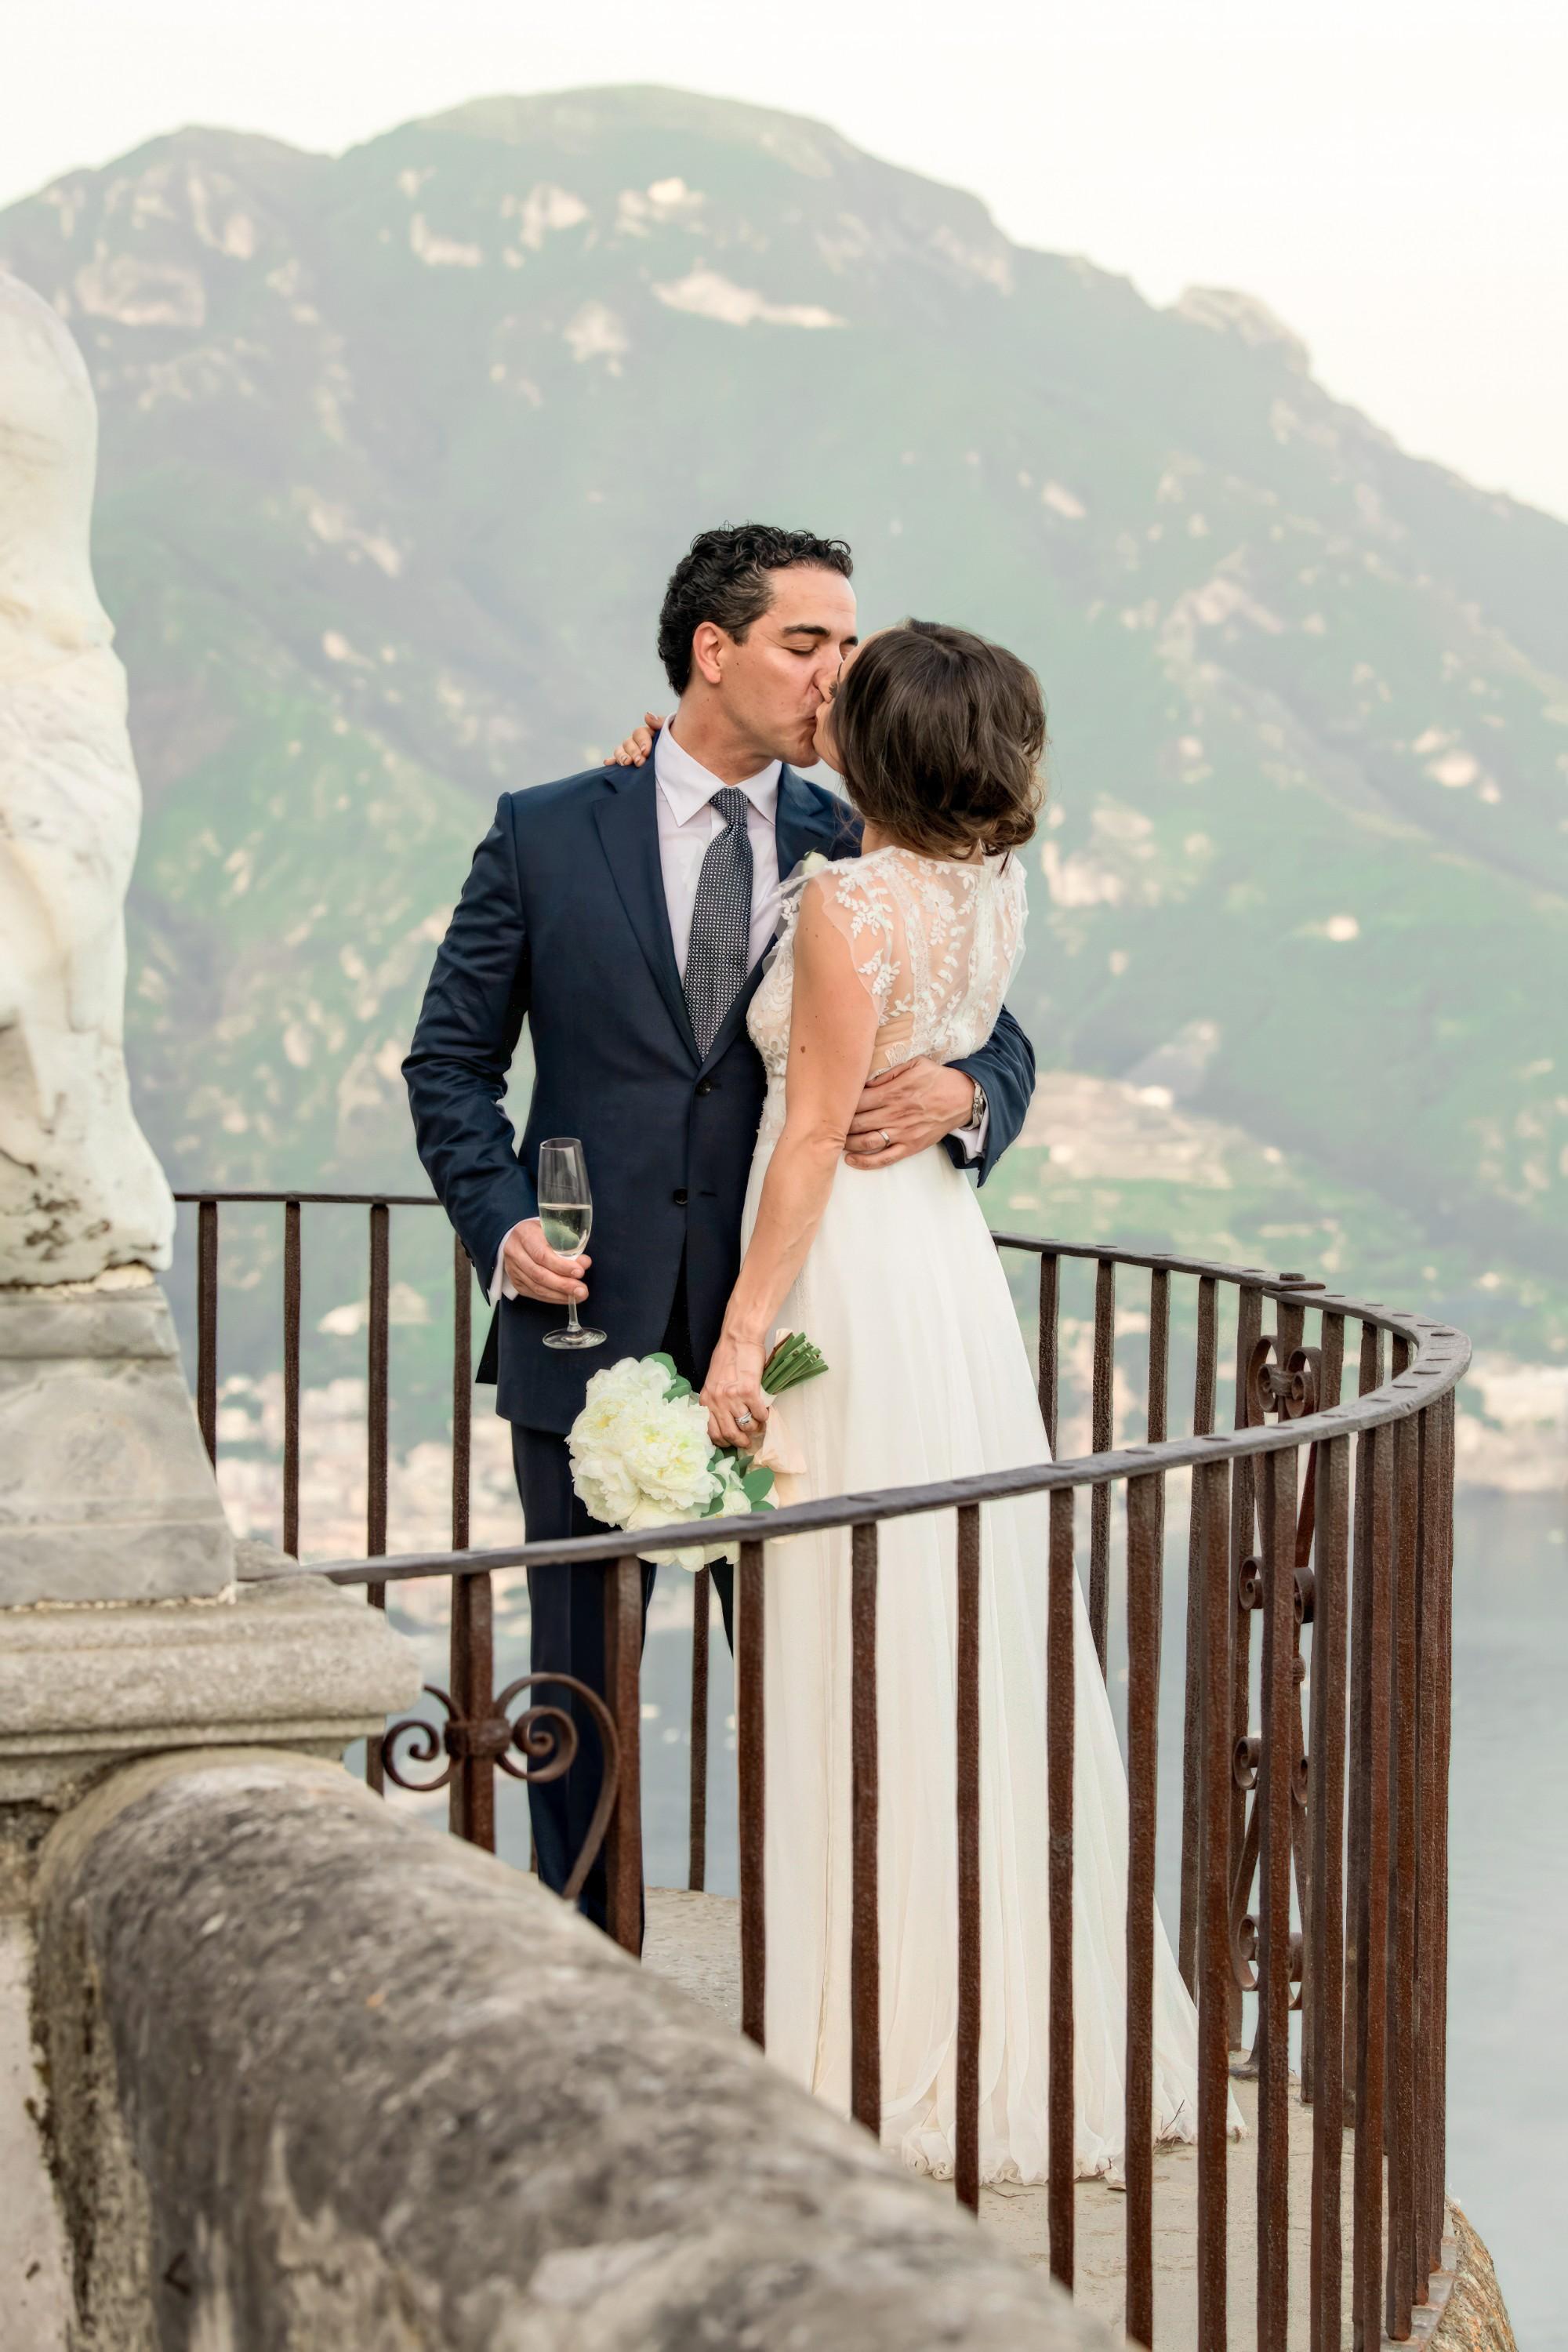 A Love Story Unfolds on the Amalfi Coast